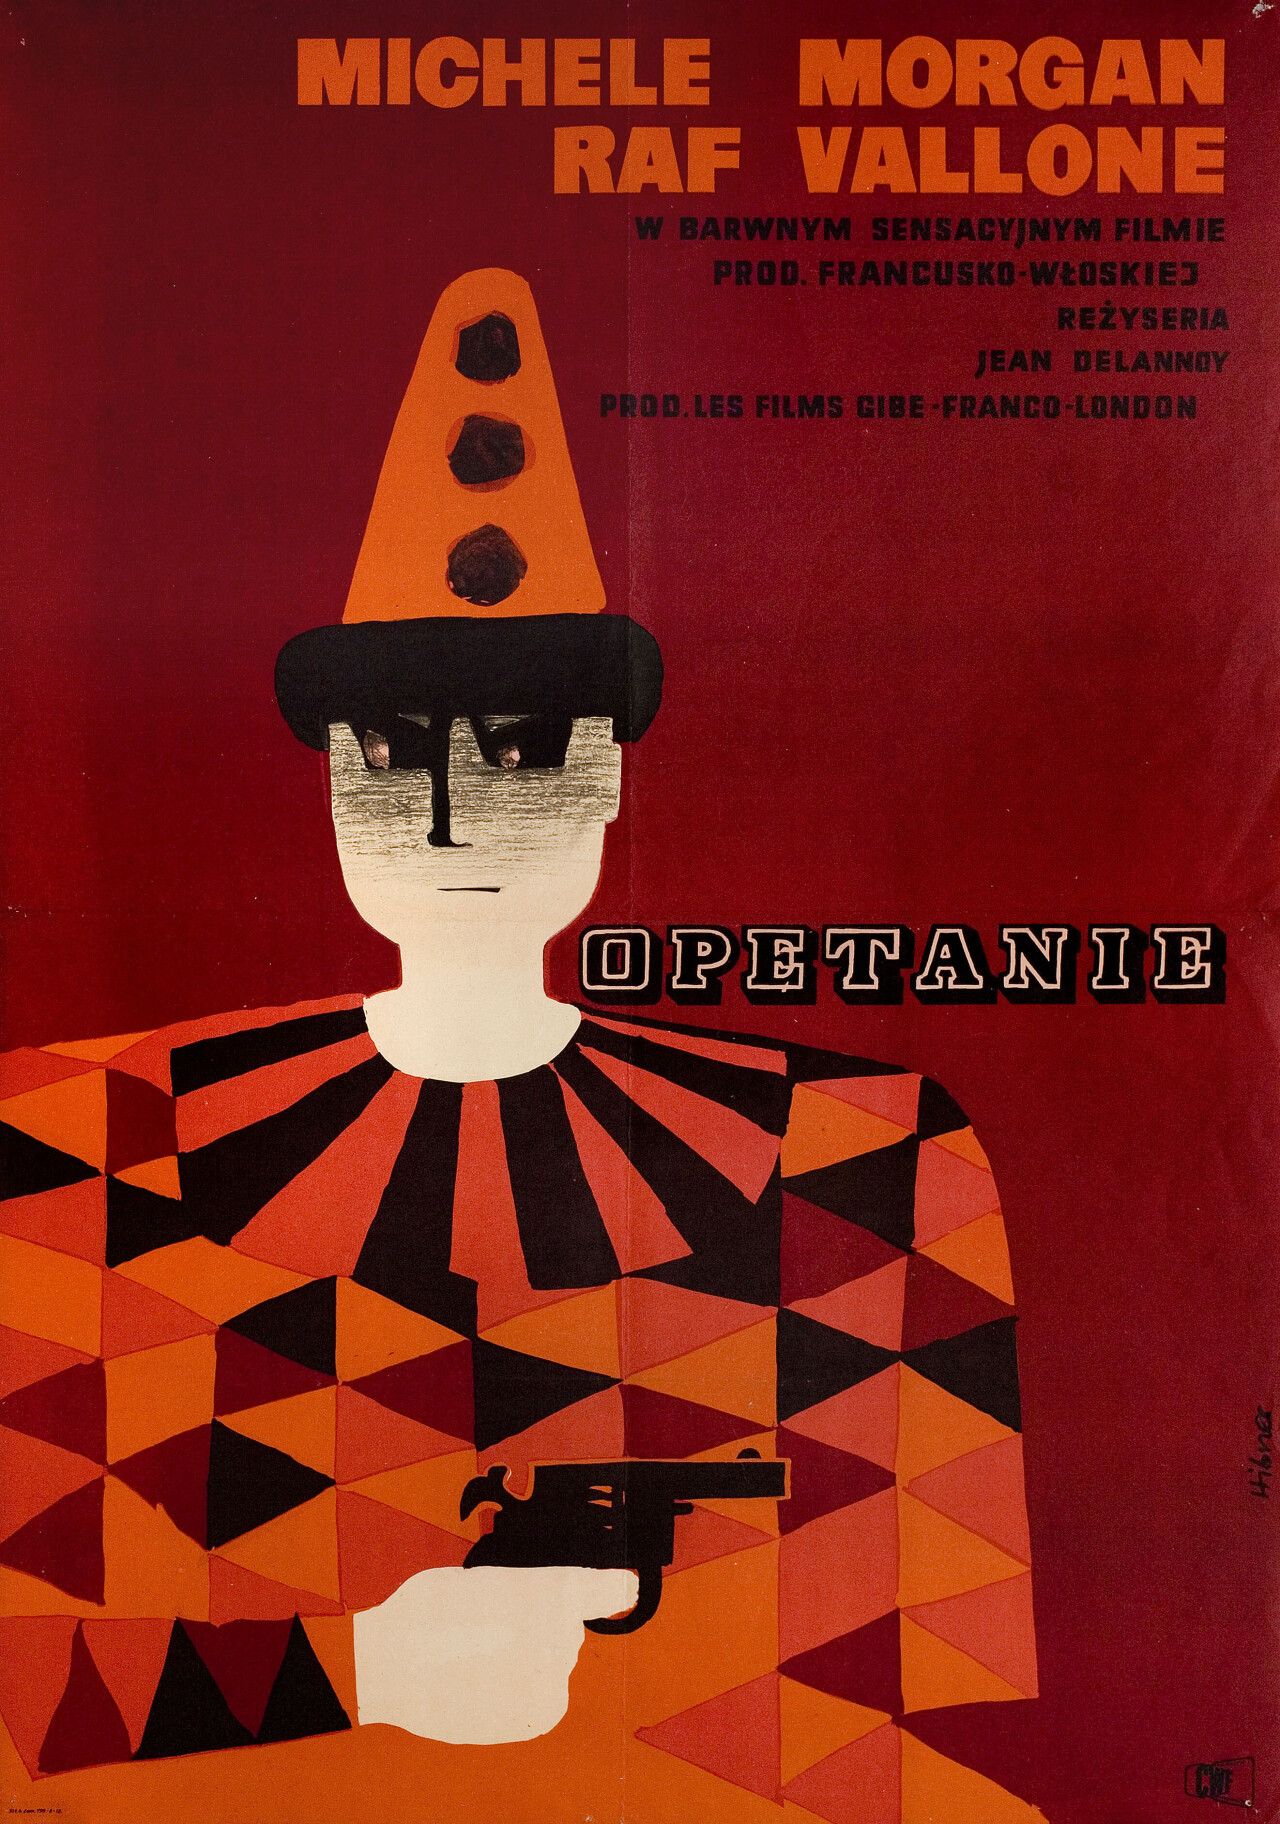 Наваждение (Obsession, 1954), режиссёр Жан Делануа, польский постер к фильму, автор Мацей Хибнер (графический дизайн, 1954 год)